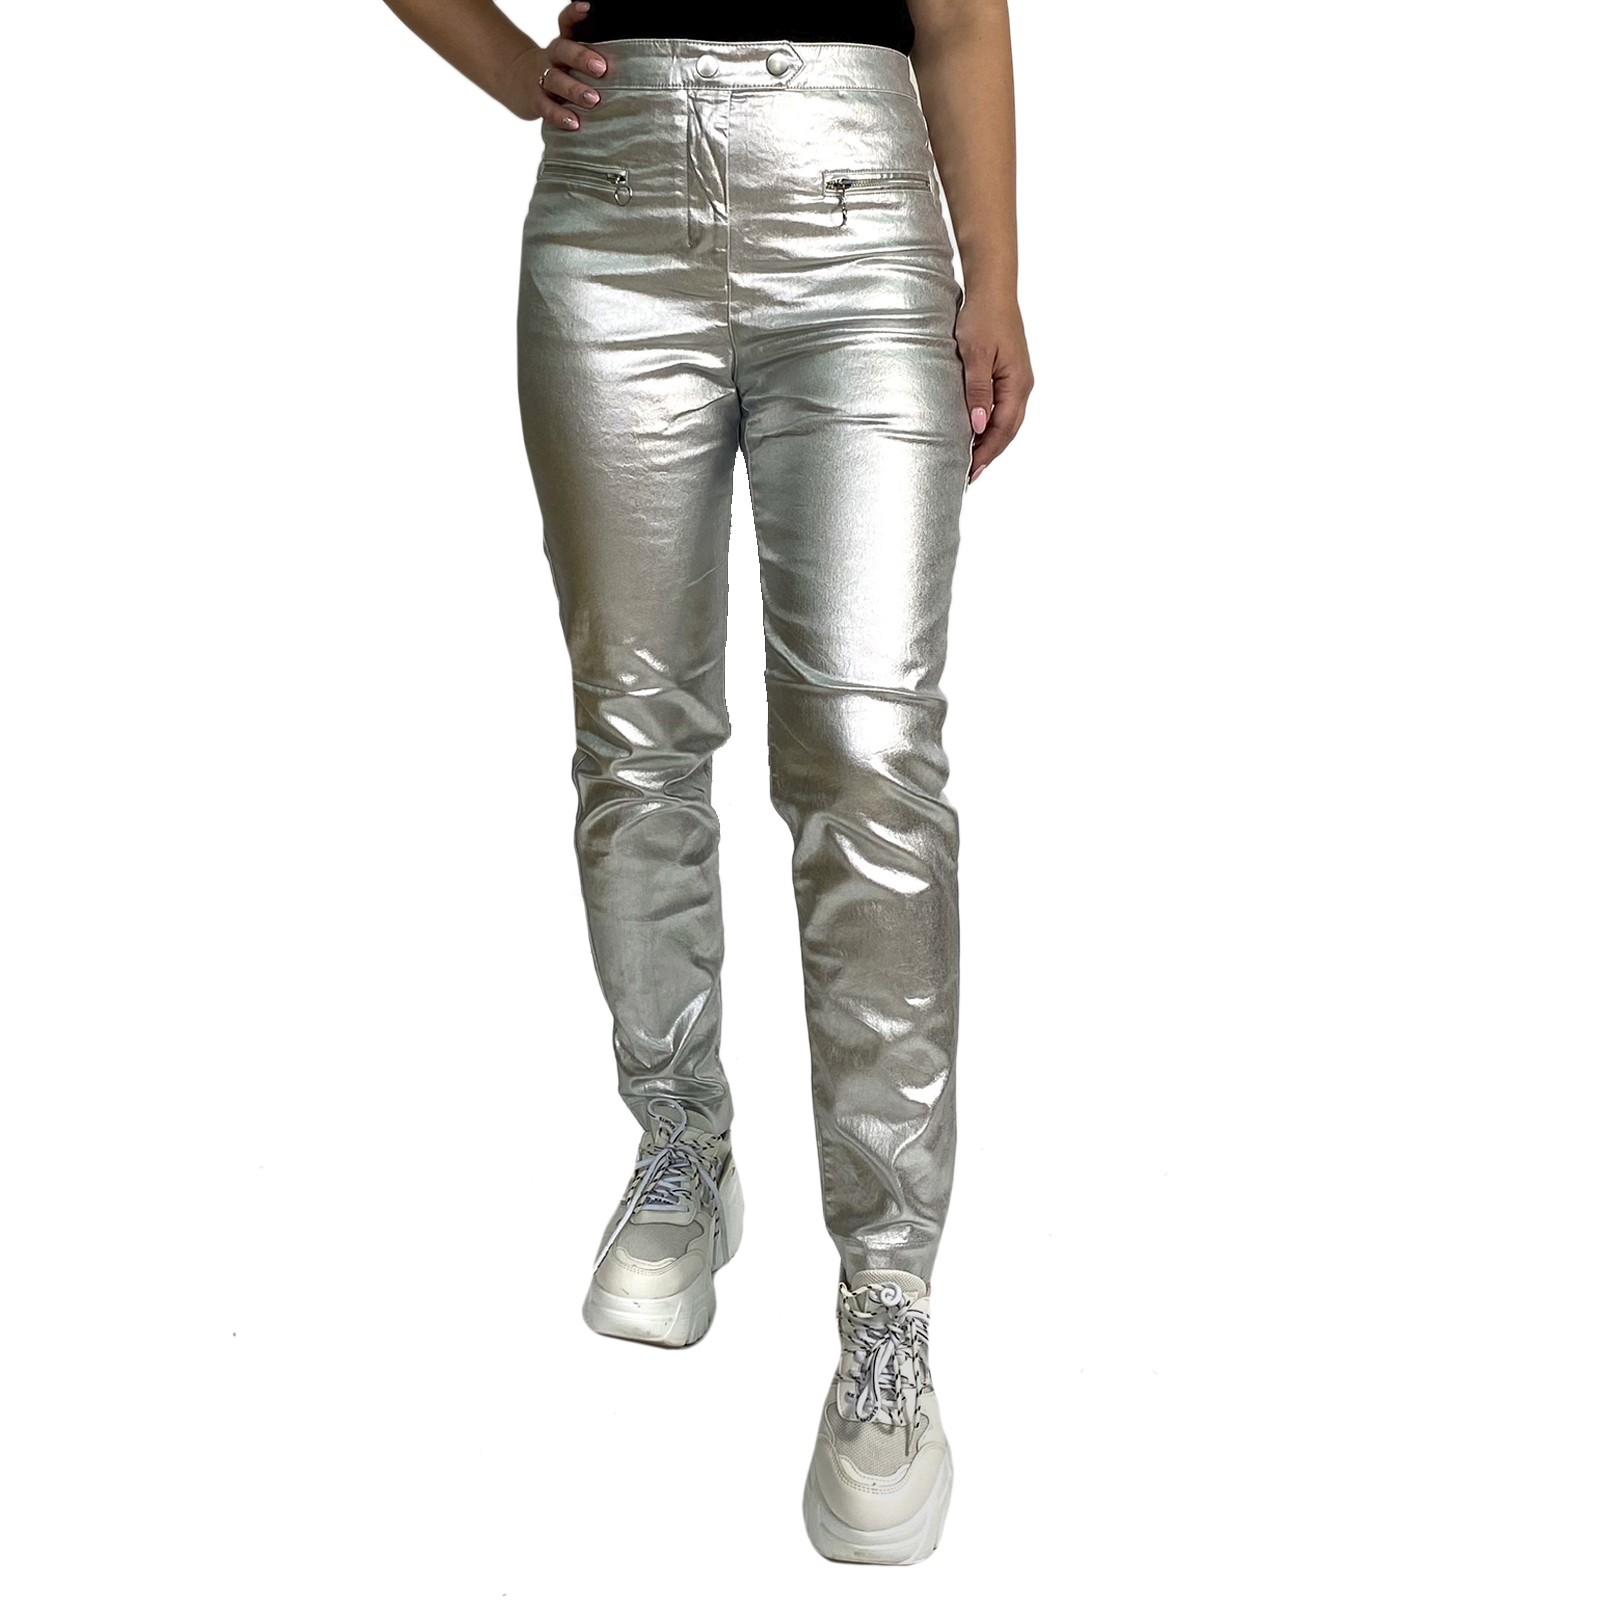 Купить в интернет магазине женские брюки металлик